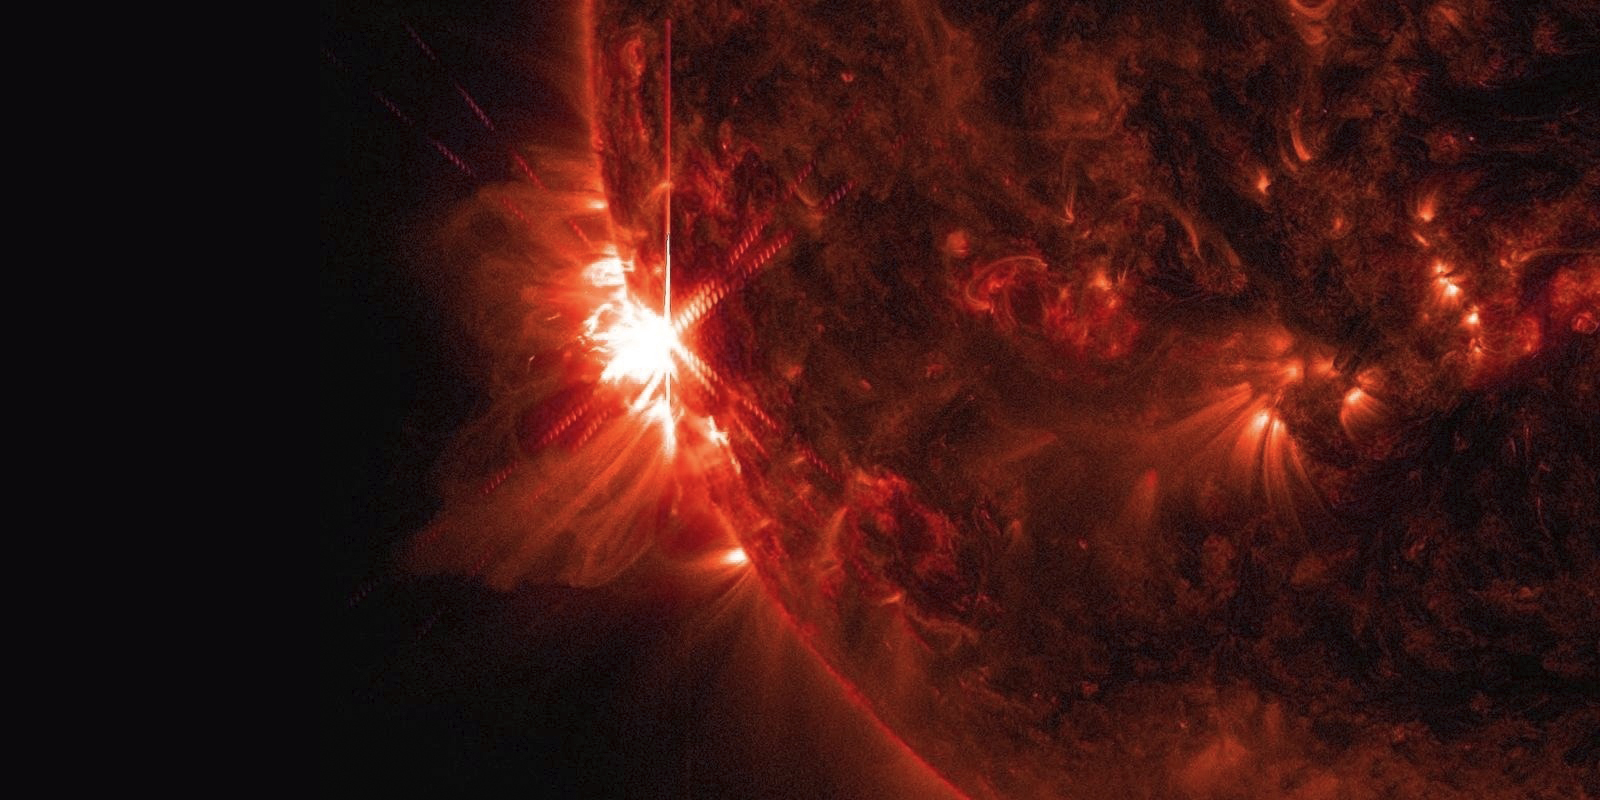 Взгляд в ад: астрофотограф сделал завораживающие снимки бушующей плазмы на Солнце